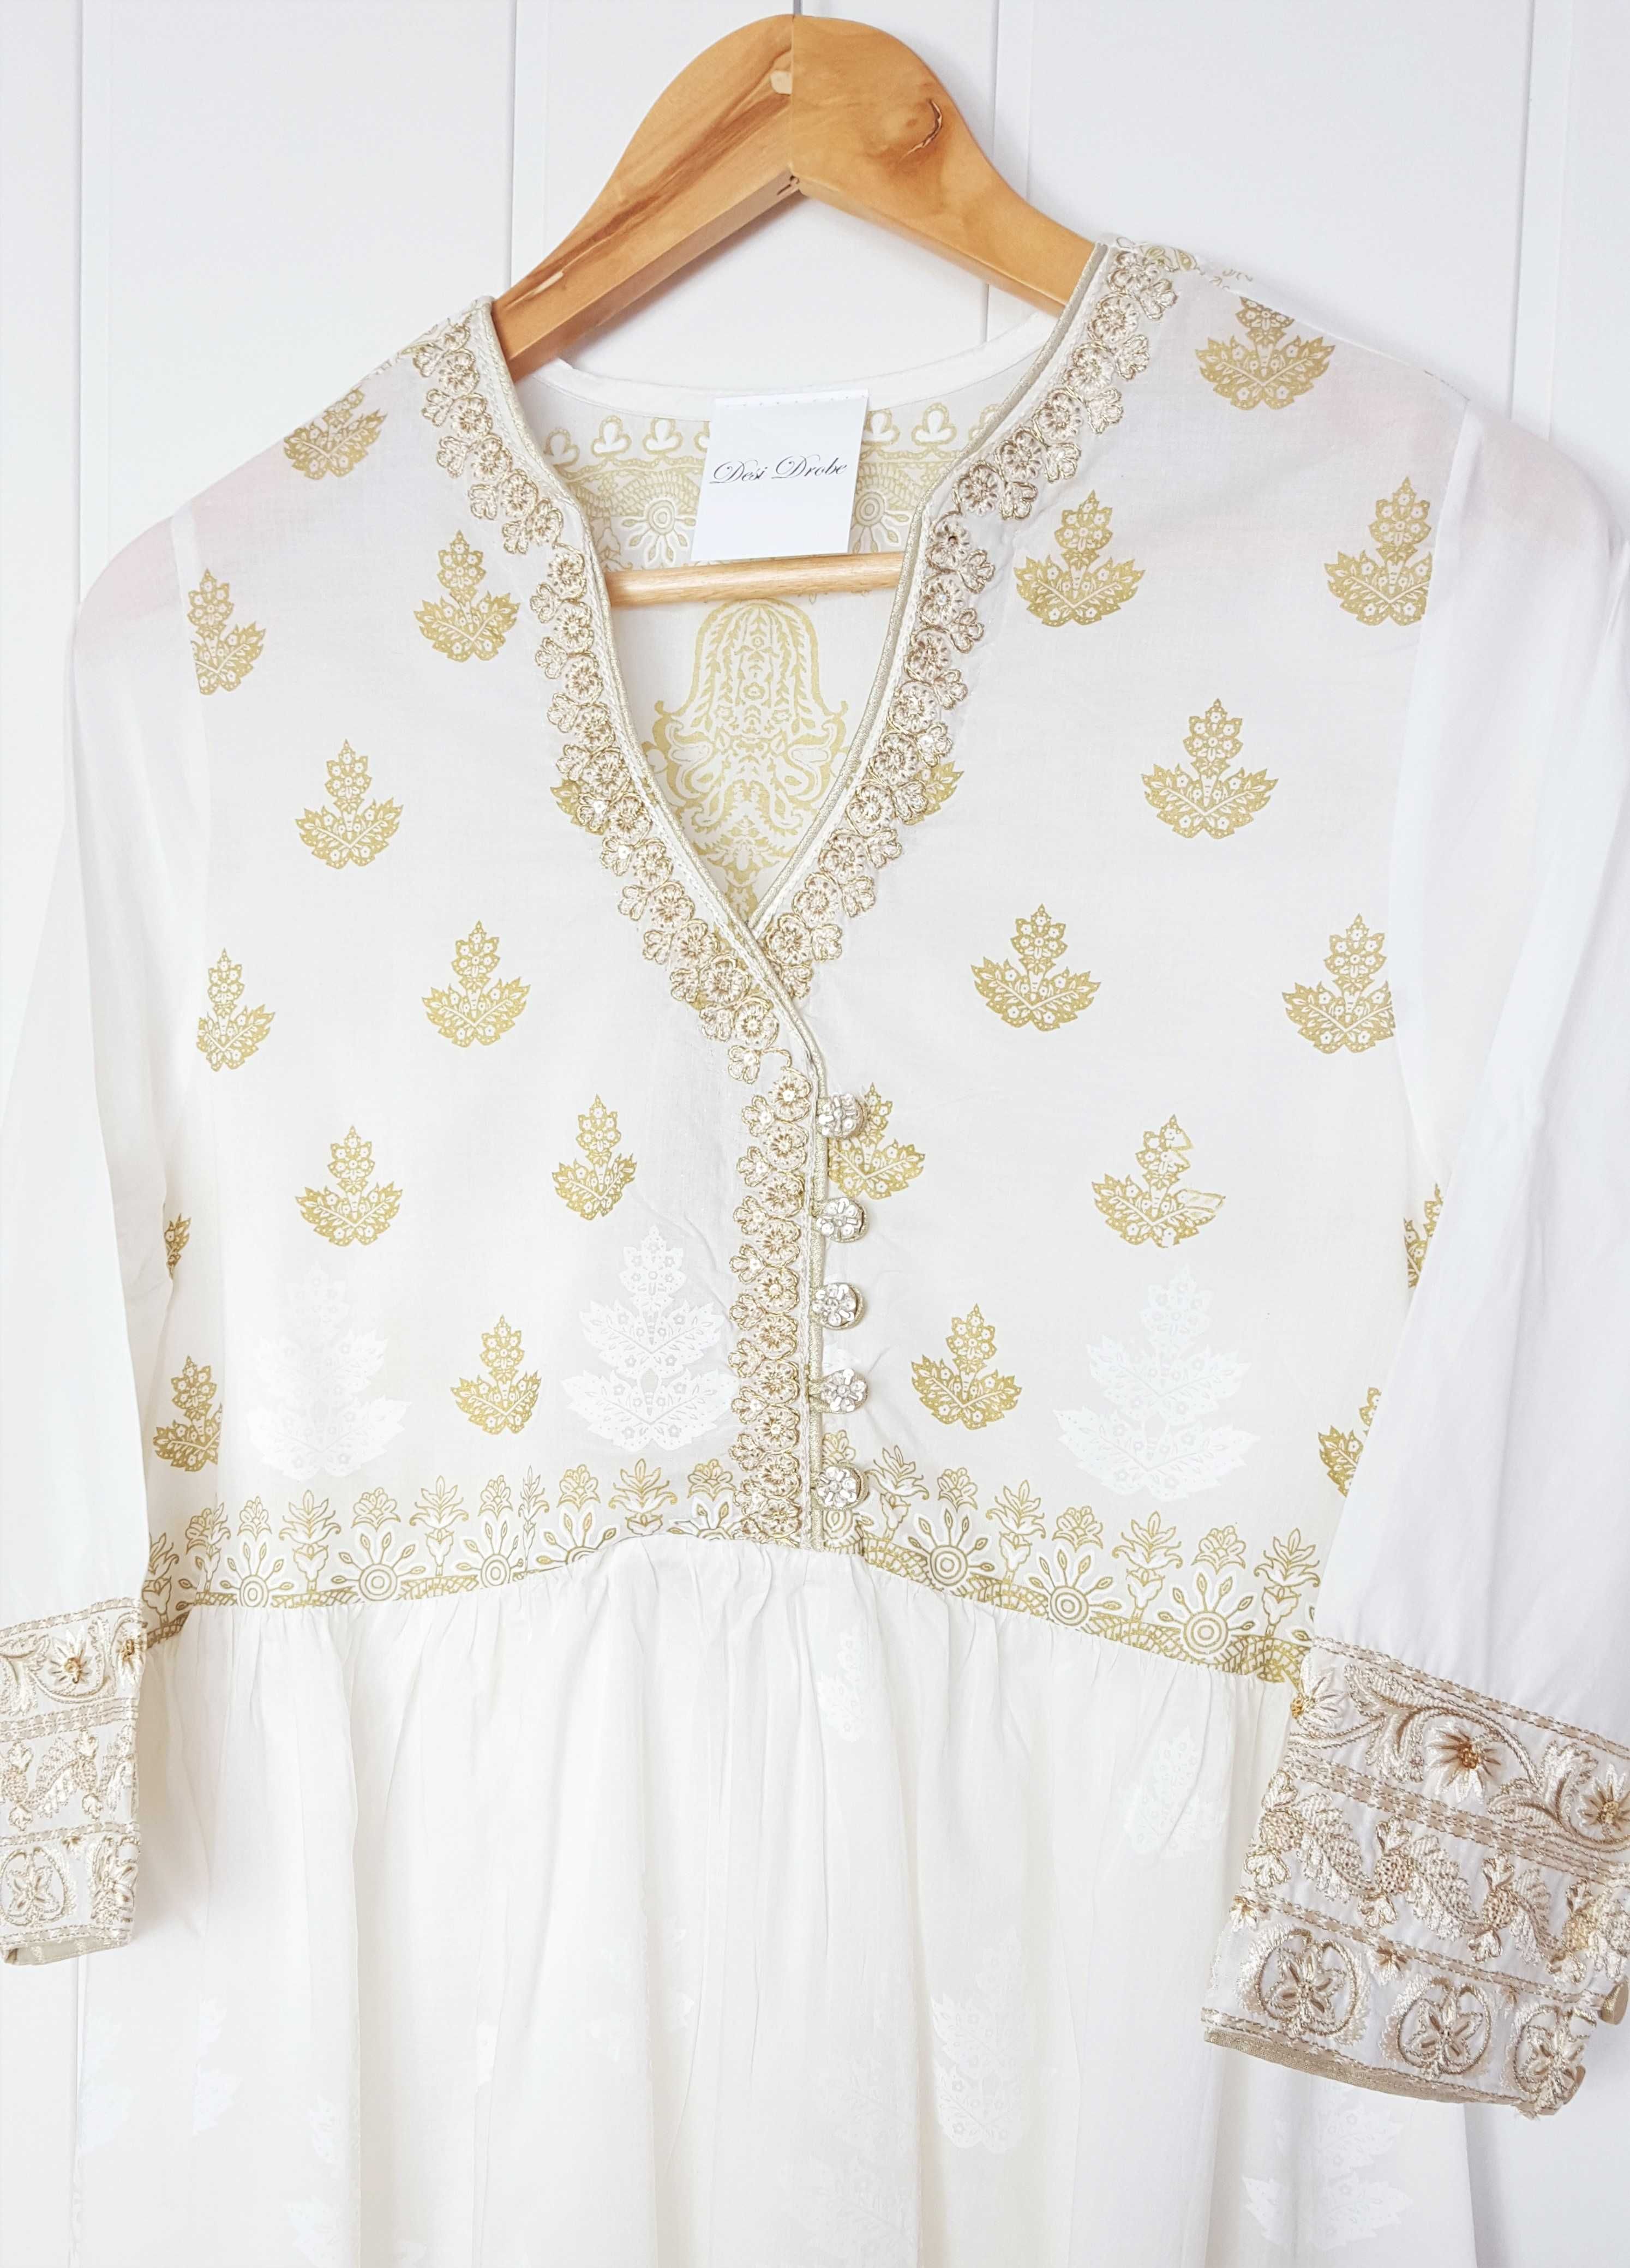 Nowa biała sukienka indyjska S 36 złoty biały wzór boho hippie bawełna